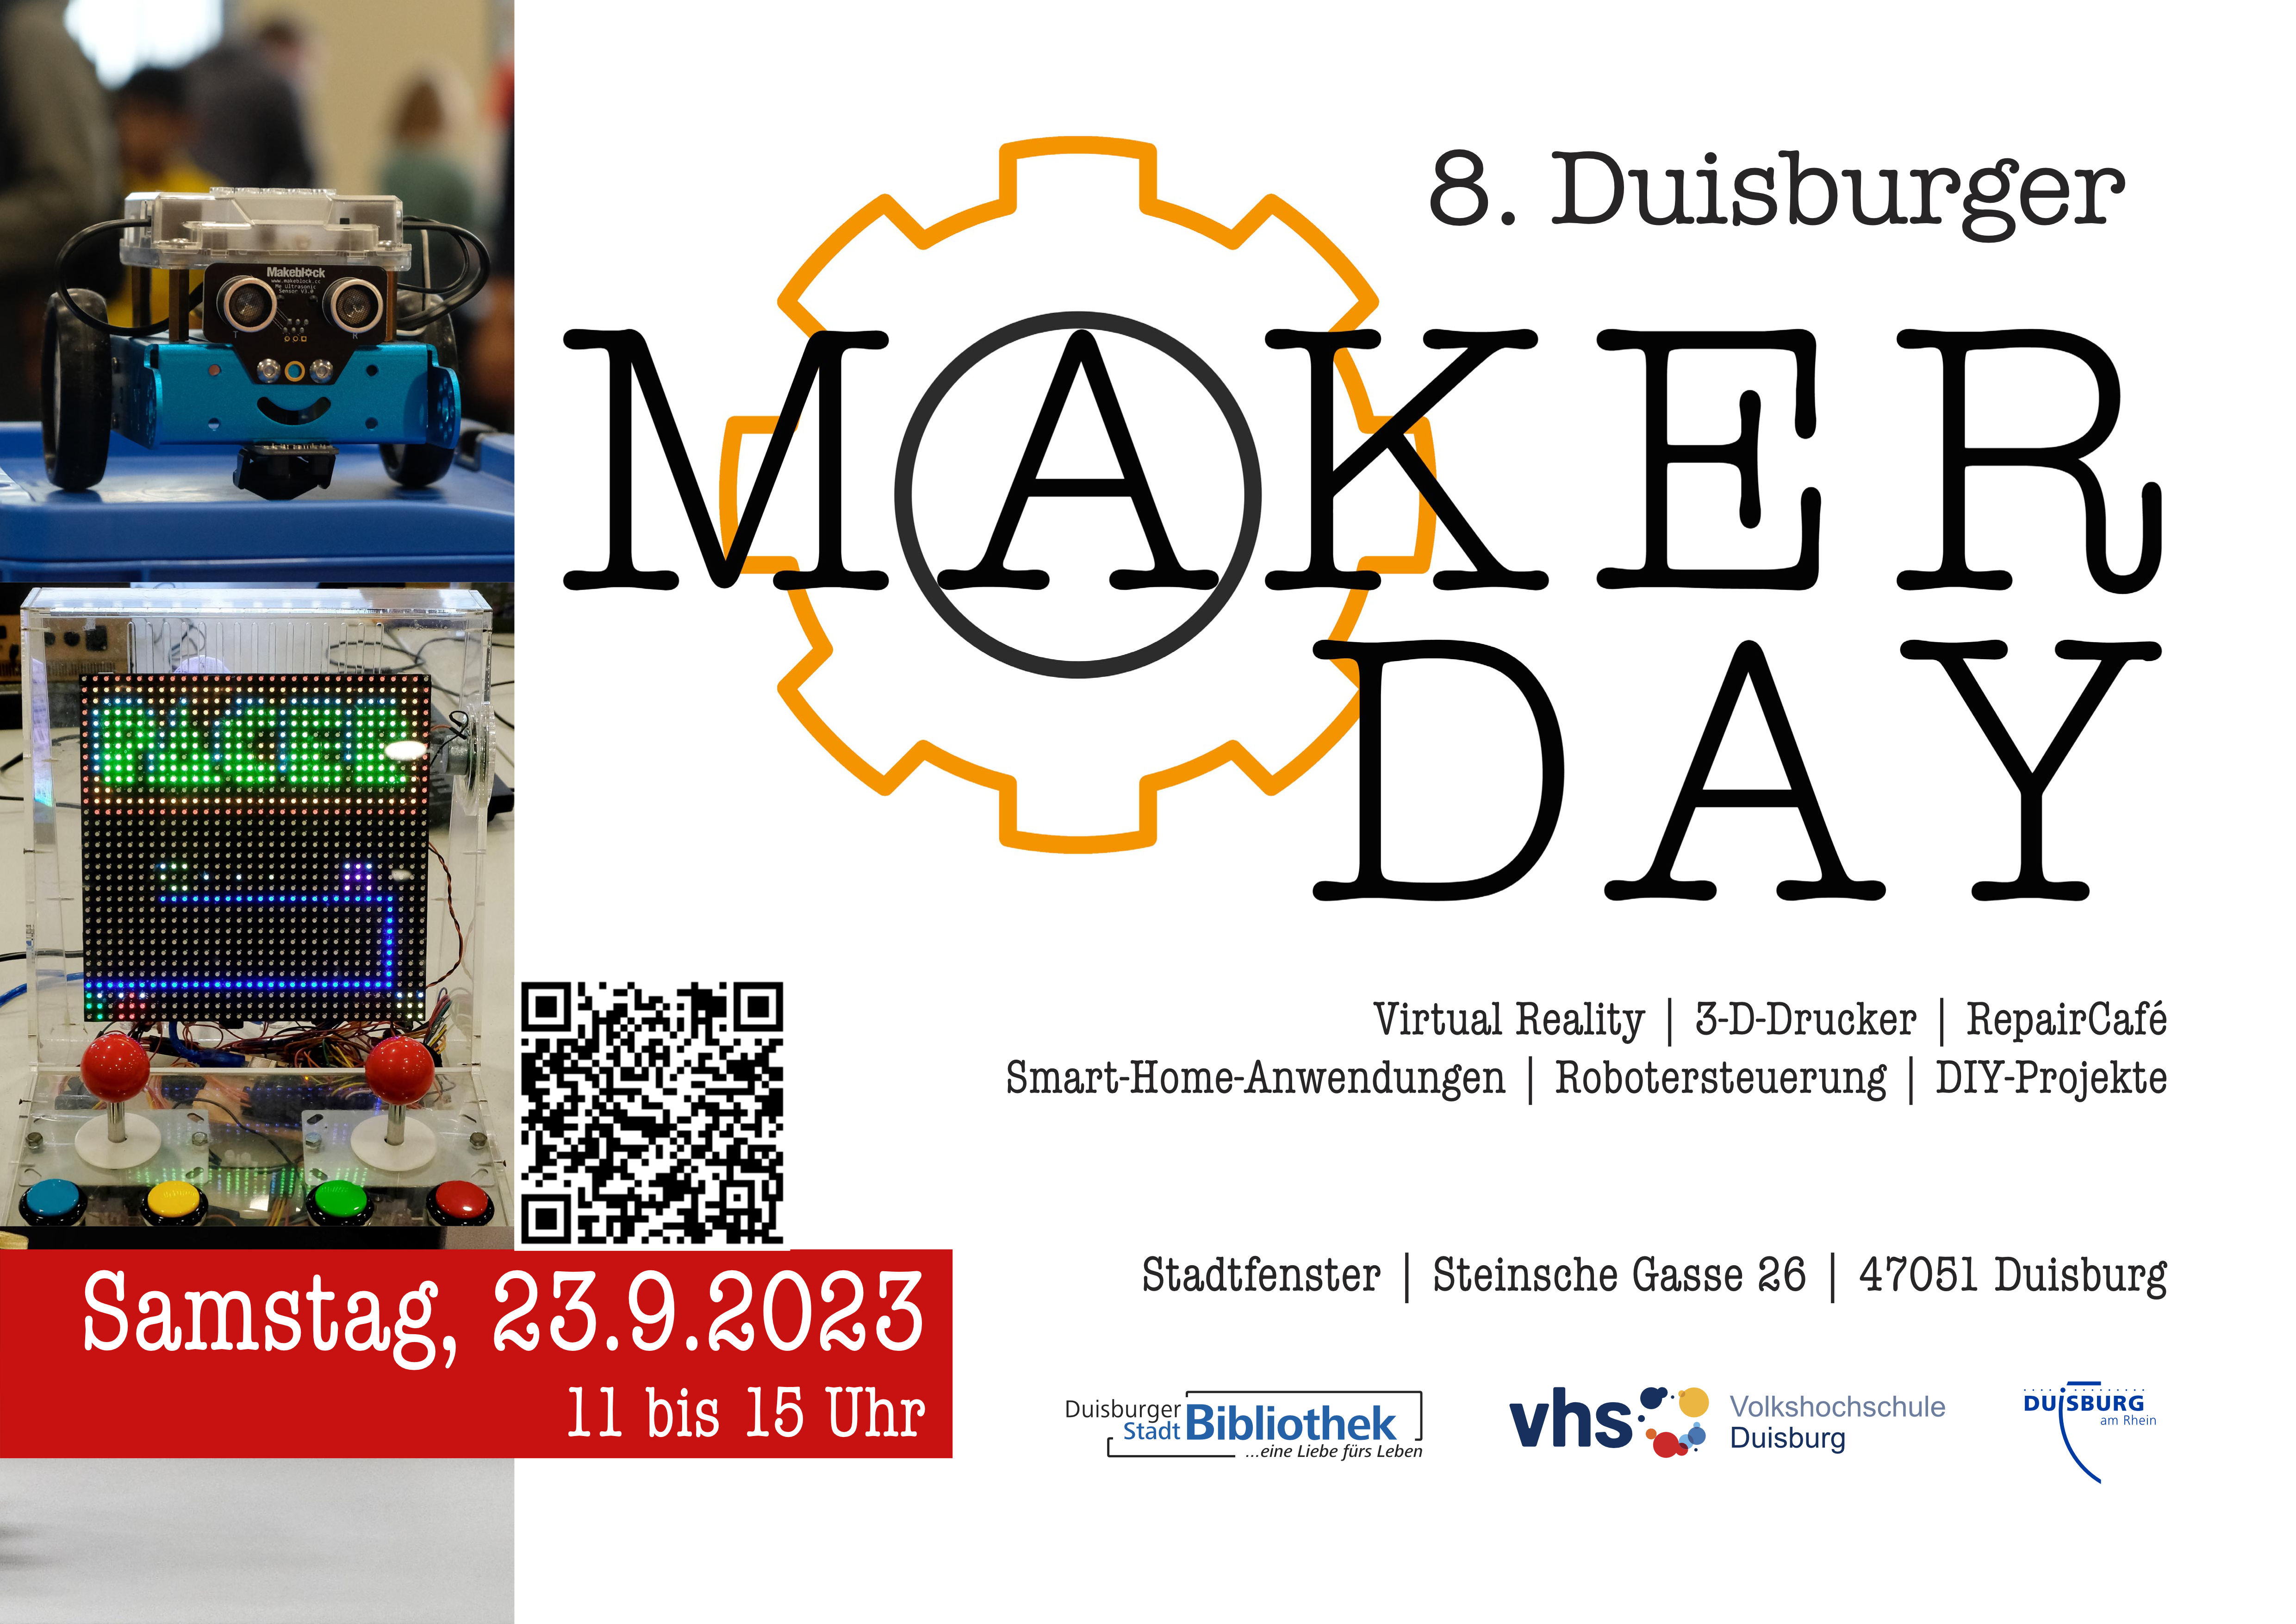 8. Duisburger Maker Day - 23.9.2023